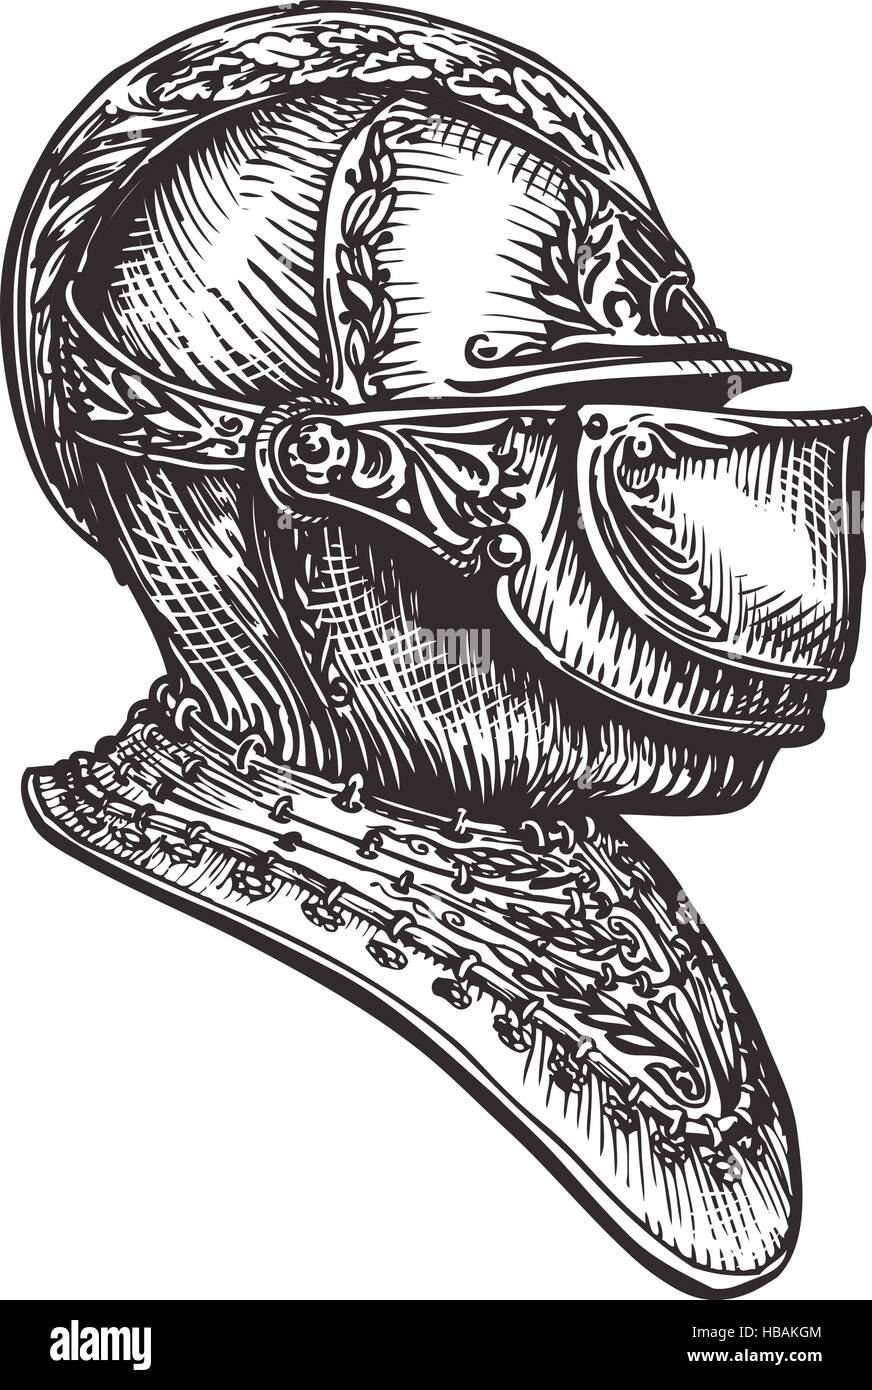 Knight helmet sketch. Vector illustration Stock Vector